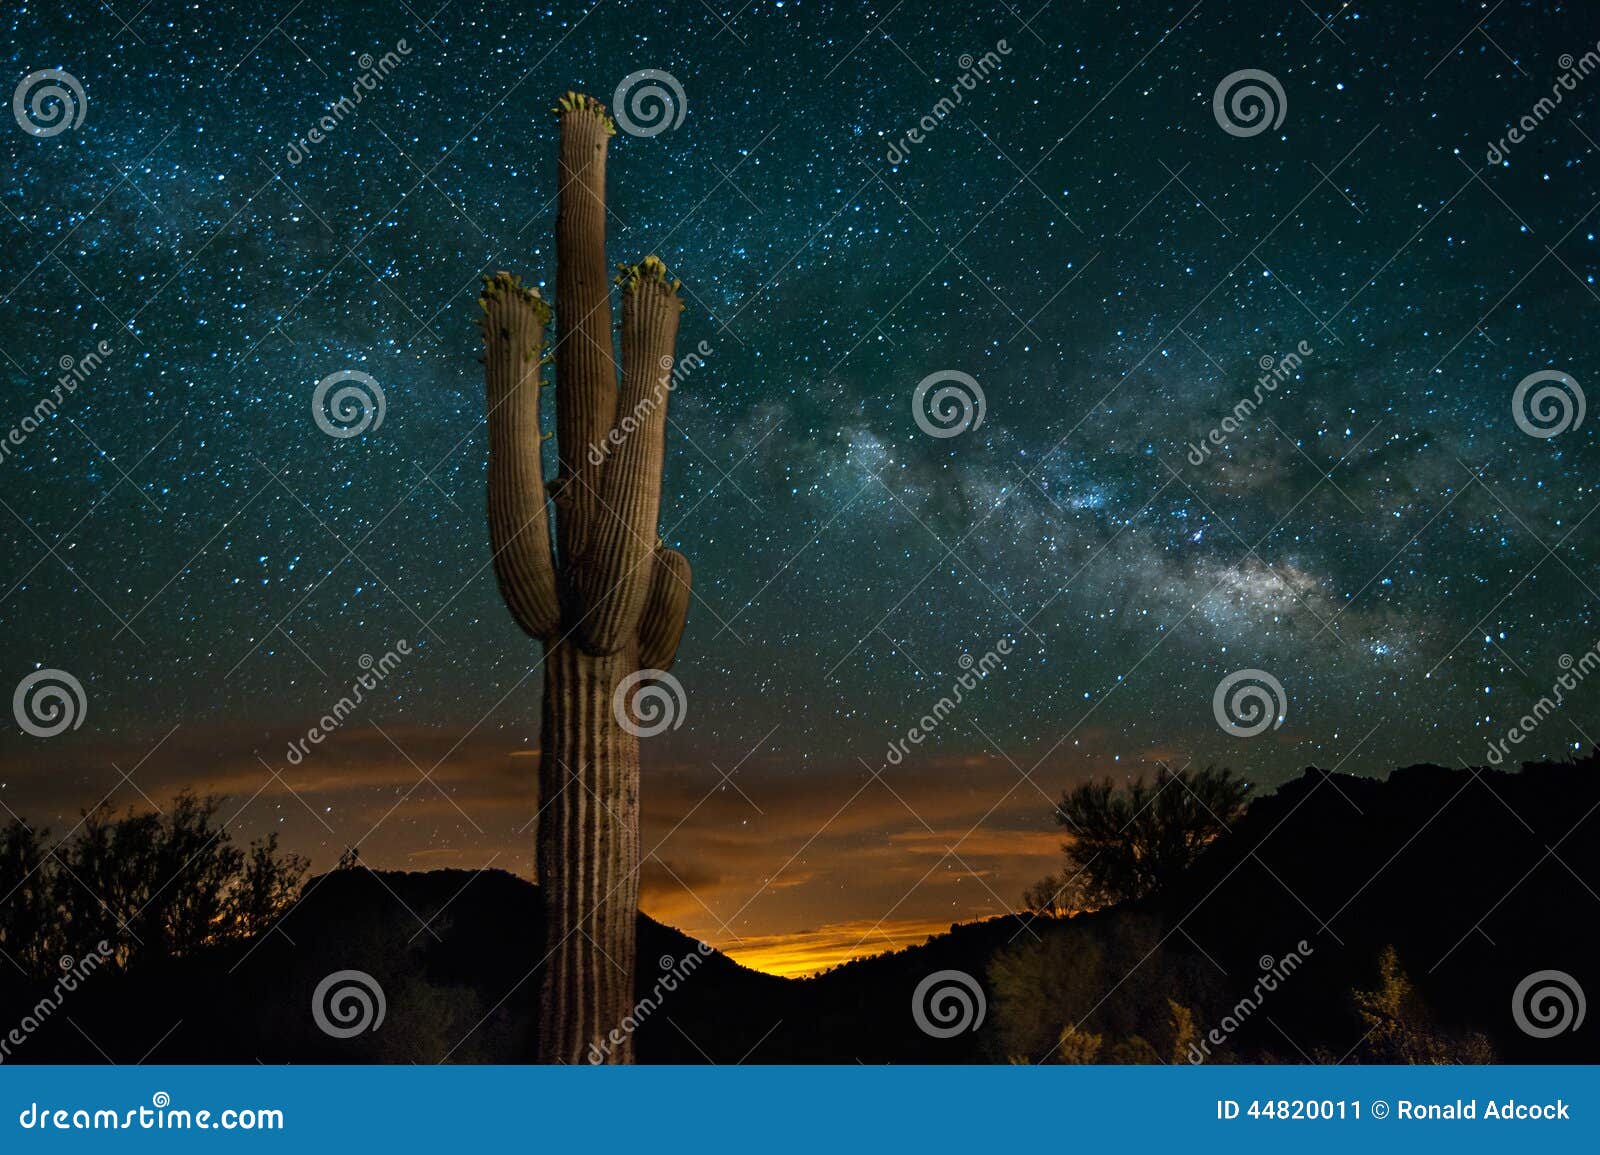 saguaro cactus and milky way